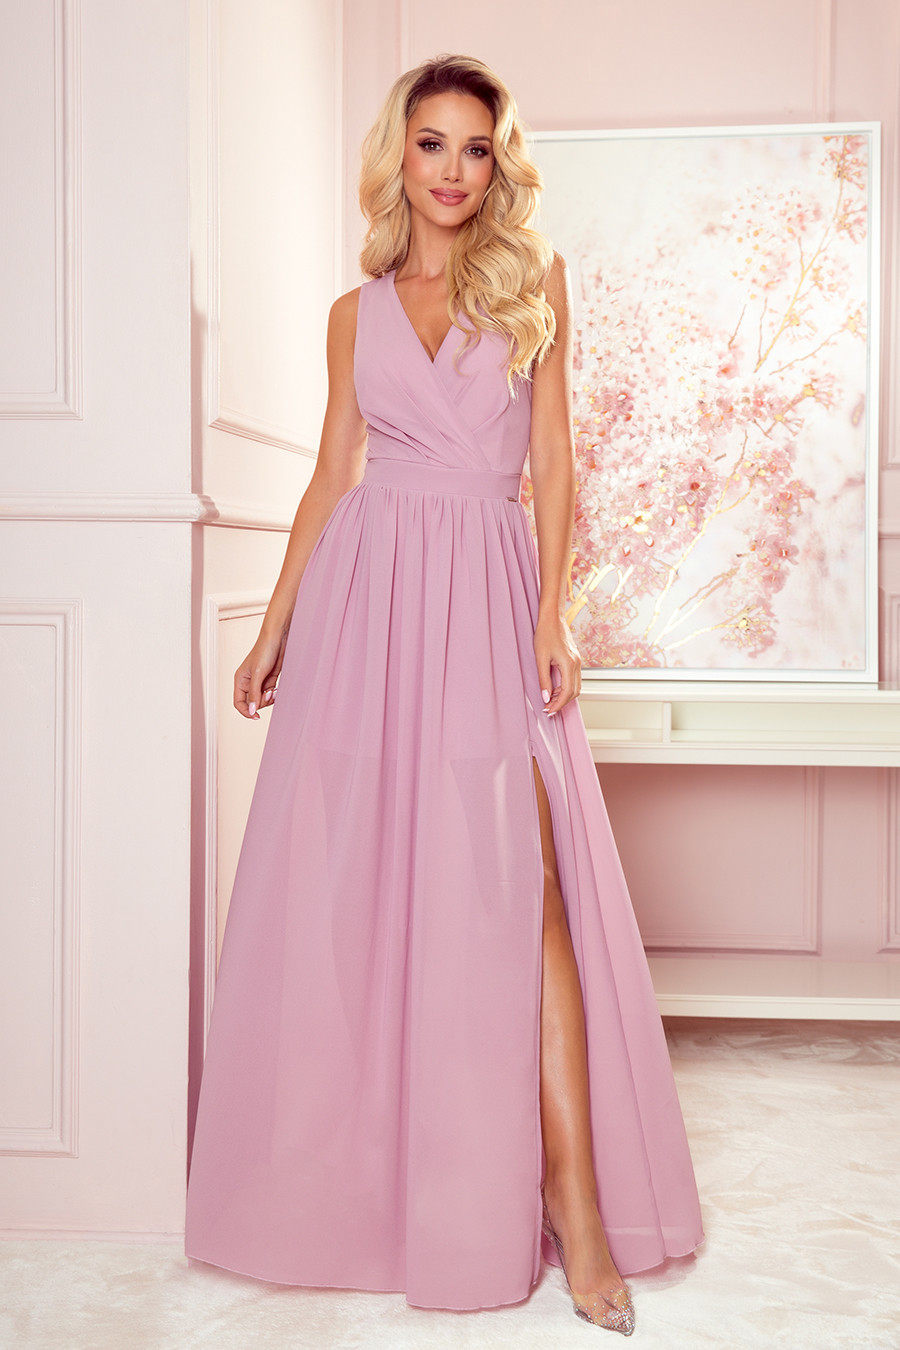 JUSTINE - Dlouhé dámské šaty v pudrově růžové barvě s výstřihem a zavazováním 362-3 M